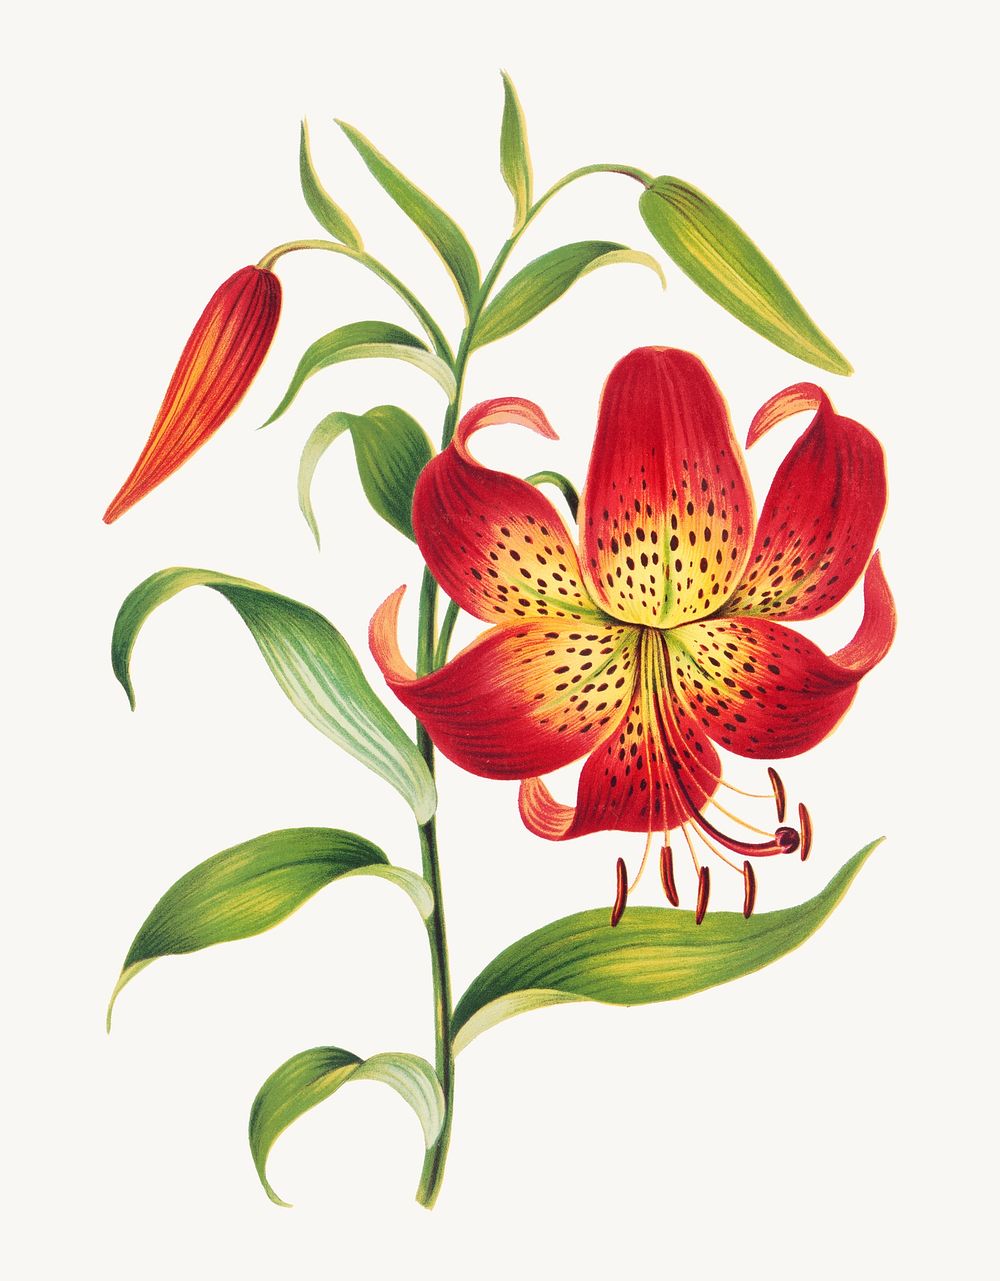 Vintage red lily flower botanical illustration, remix from artworks by L. Prang & Co.